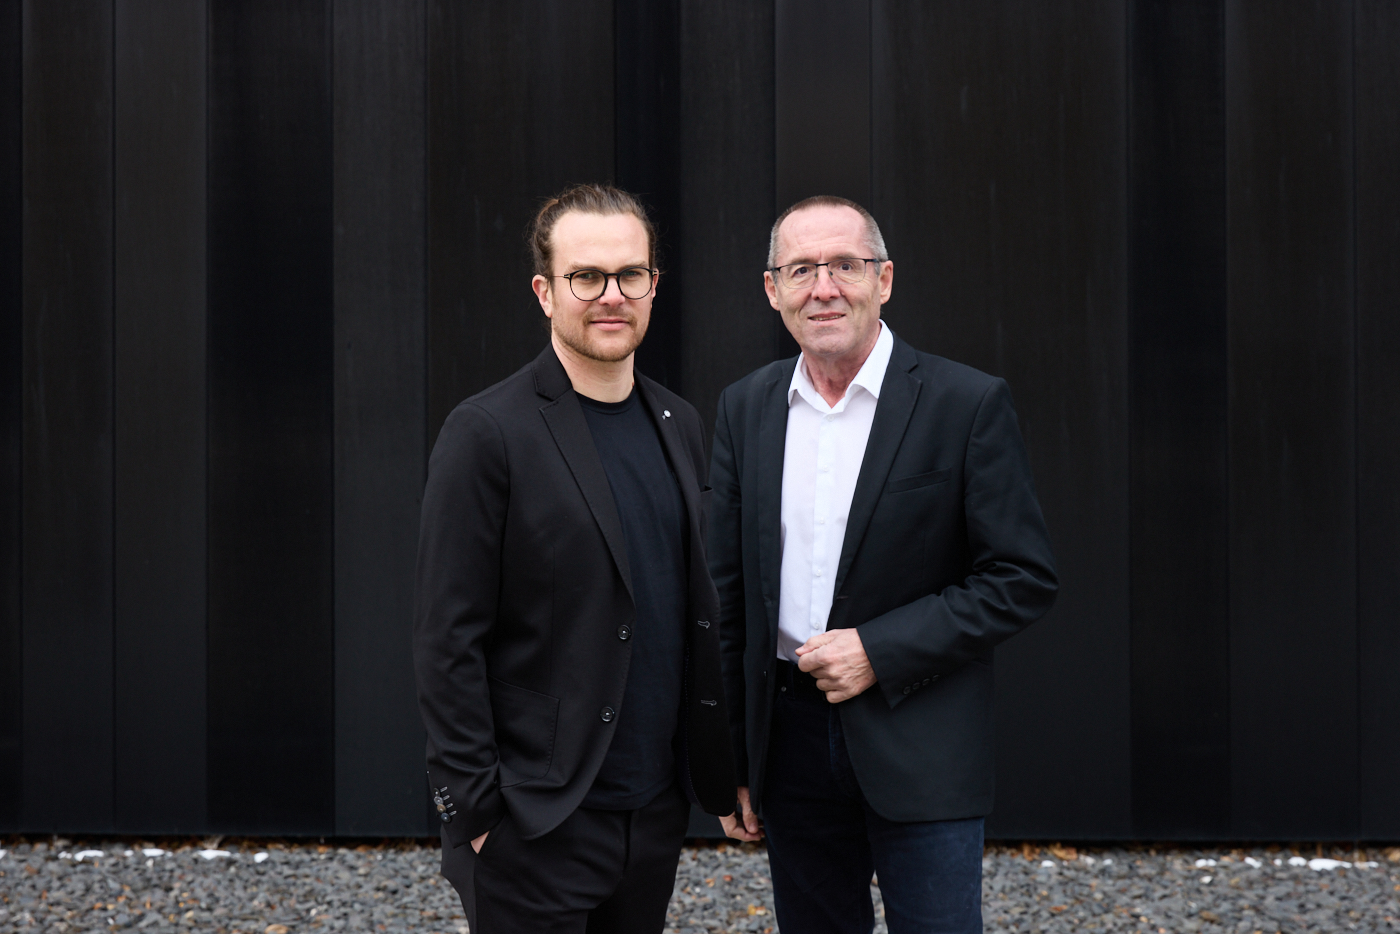 Architekt Tobias Zieglemeyer, Lead Architecture, Wels mit Konrad Scheibl (Geschäftsführer), Delta Pods Architects. Copyright Erich Sinzinger